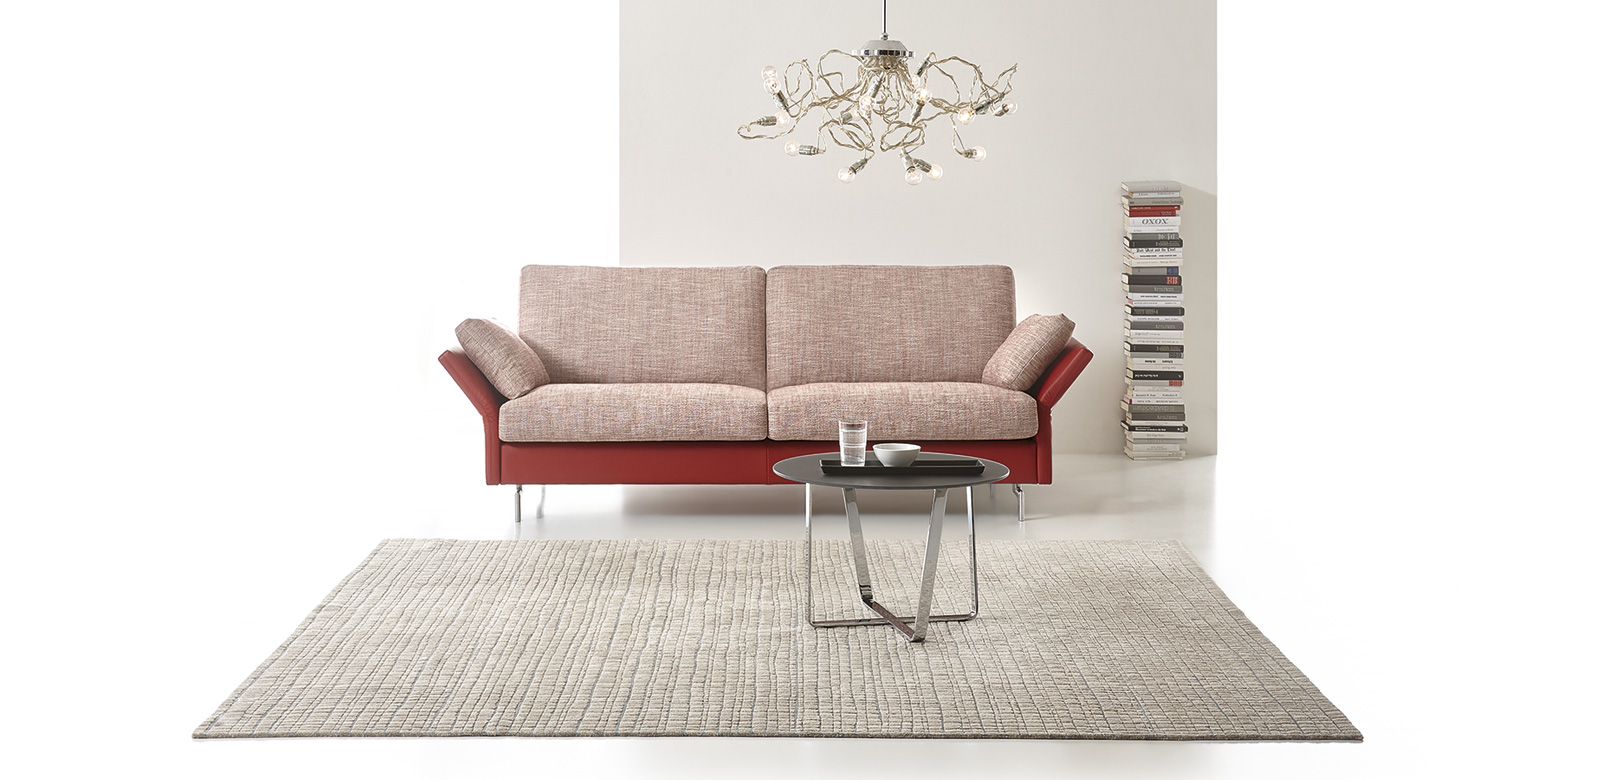 CL990 Sofa aus rot-weißem Stoff und kombiniert mit roten Lederelementen